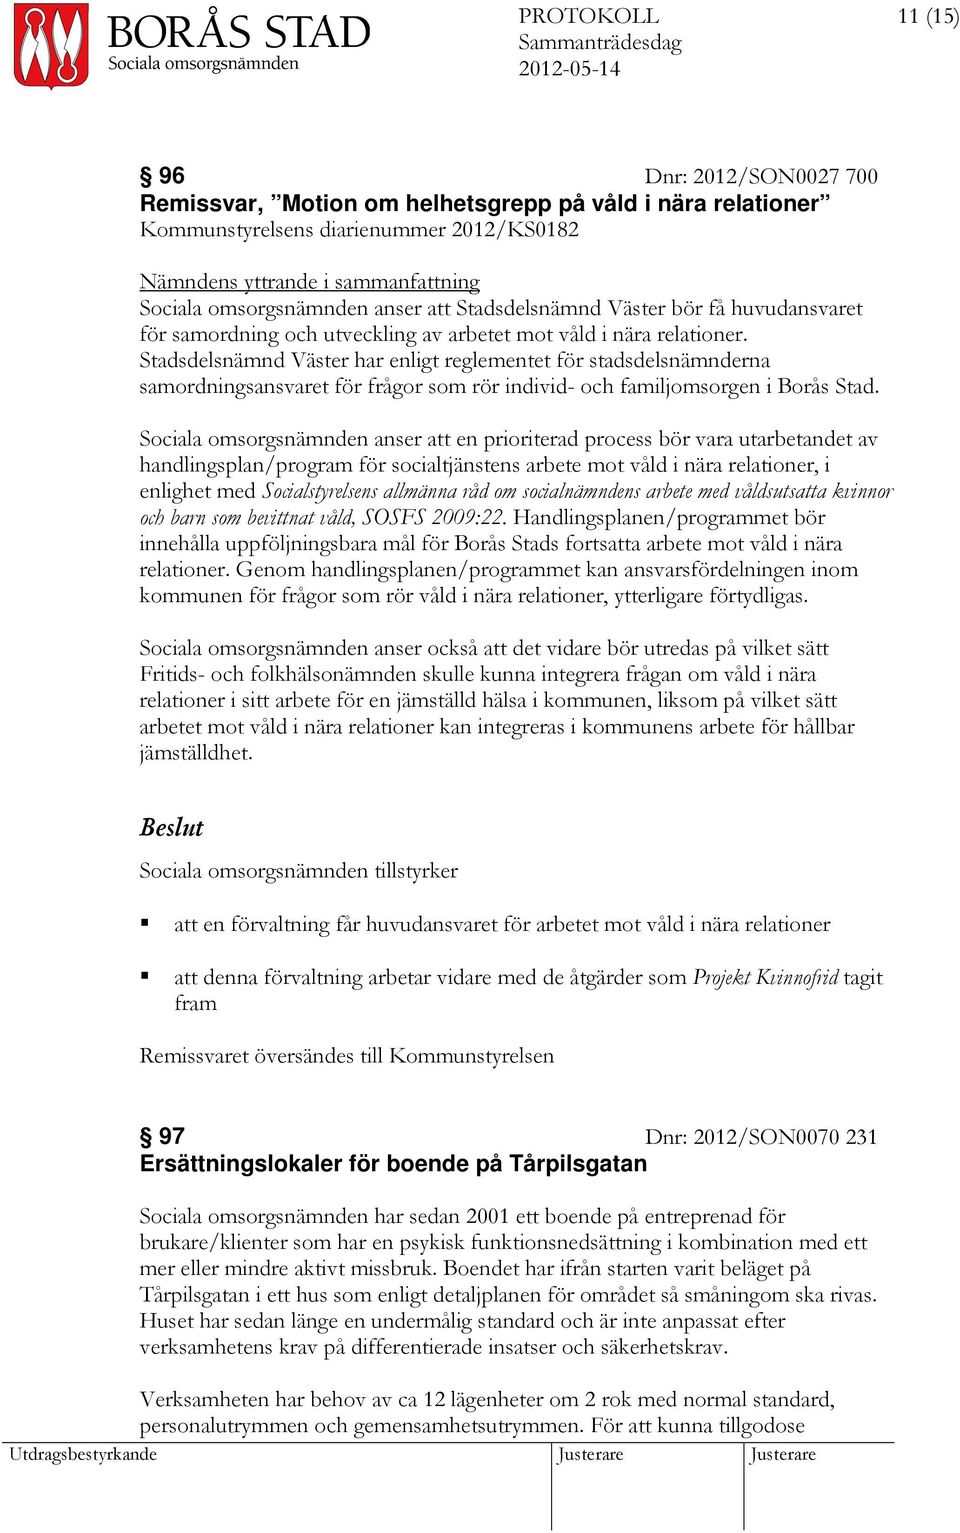 Stadsdelsnämnd Väster har enligt reglementet för stadsdelsnämnderna samordningsansvaret för frågor som rör individ- och familjomsorgen i Borås Stad.